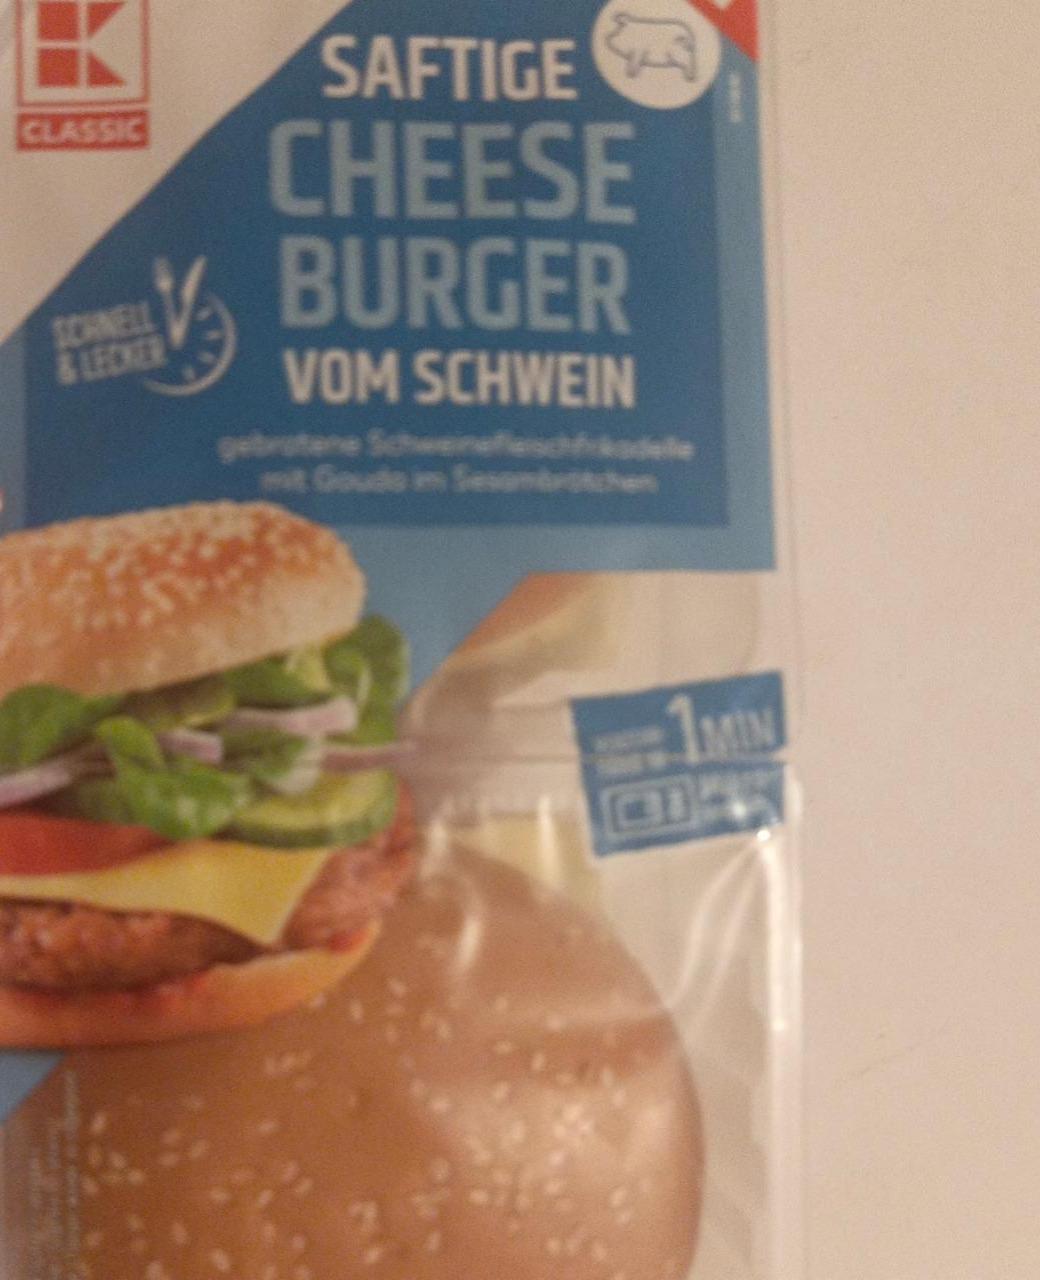 Fotografie - Saftige Cheese Burger vom Schwein K-Classic